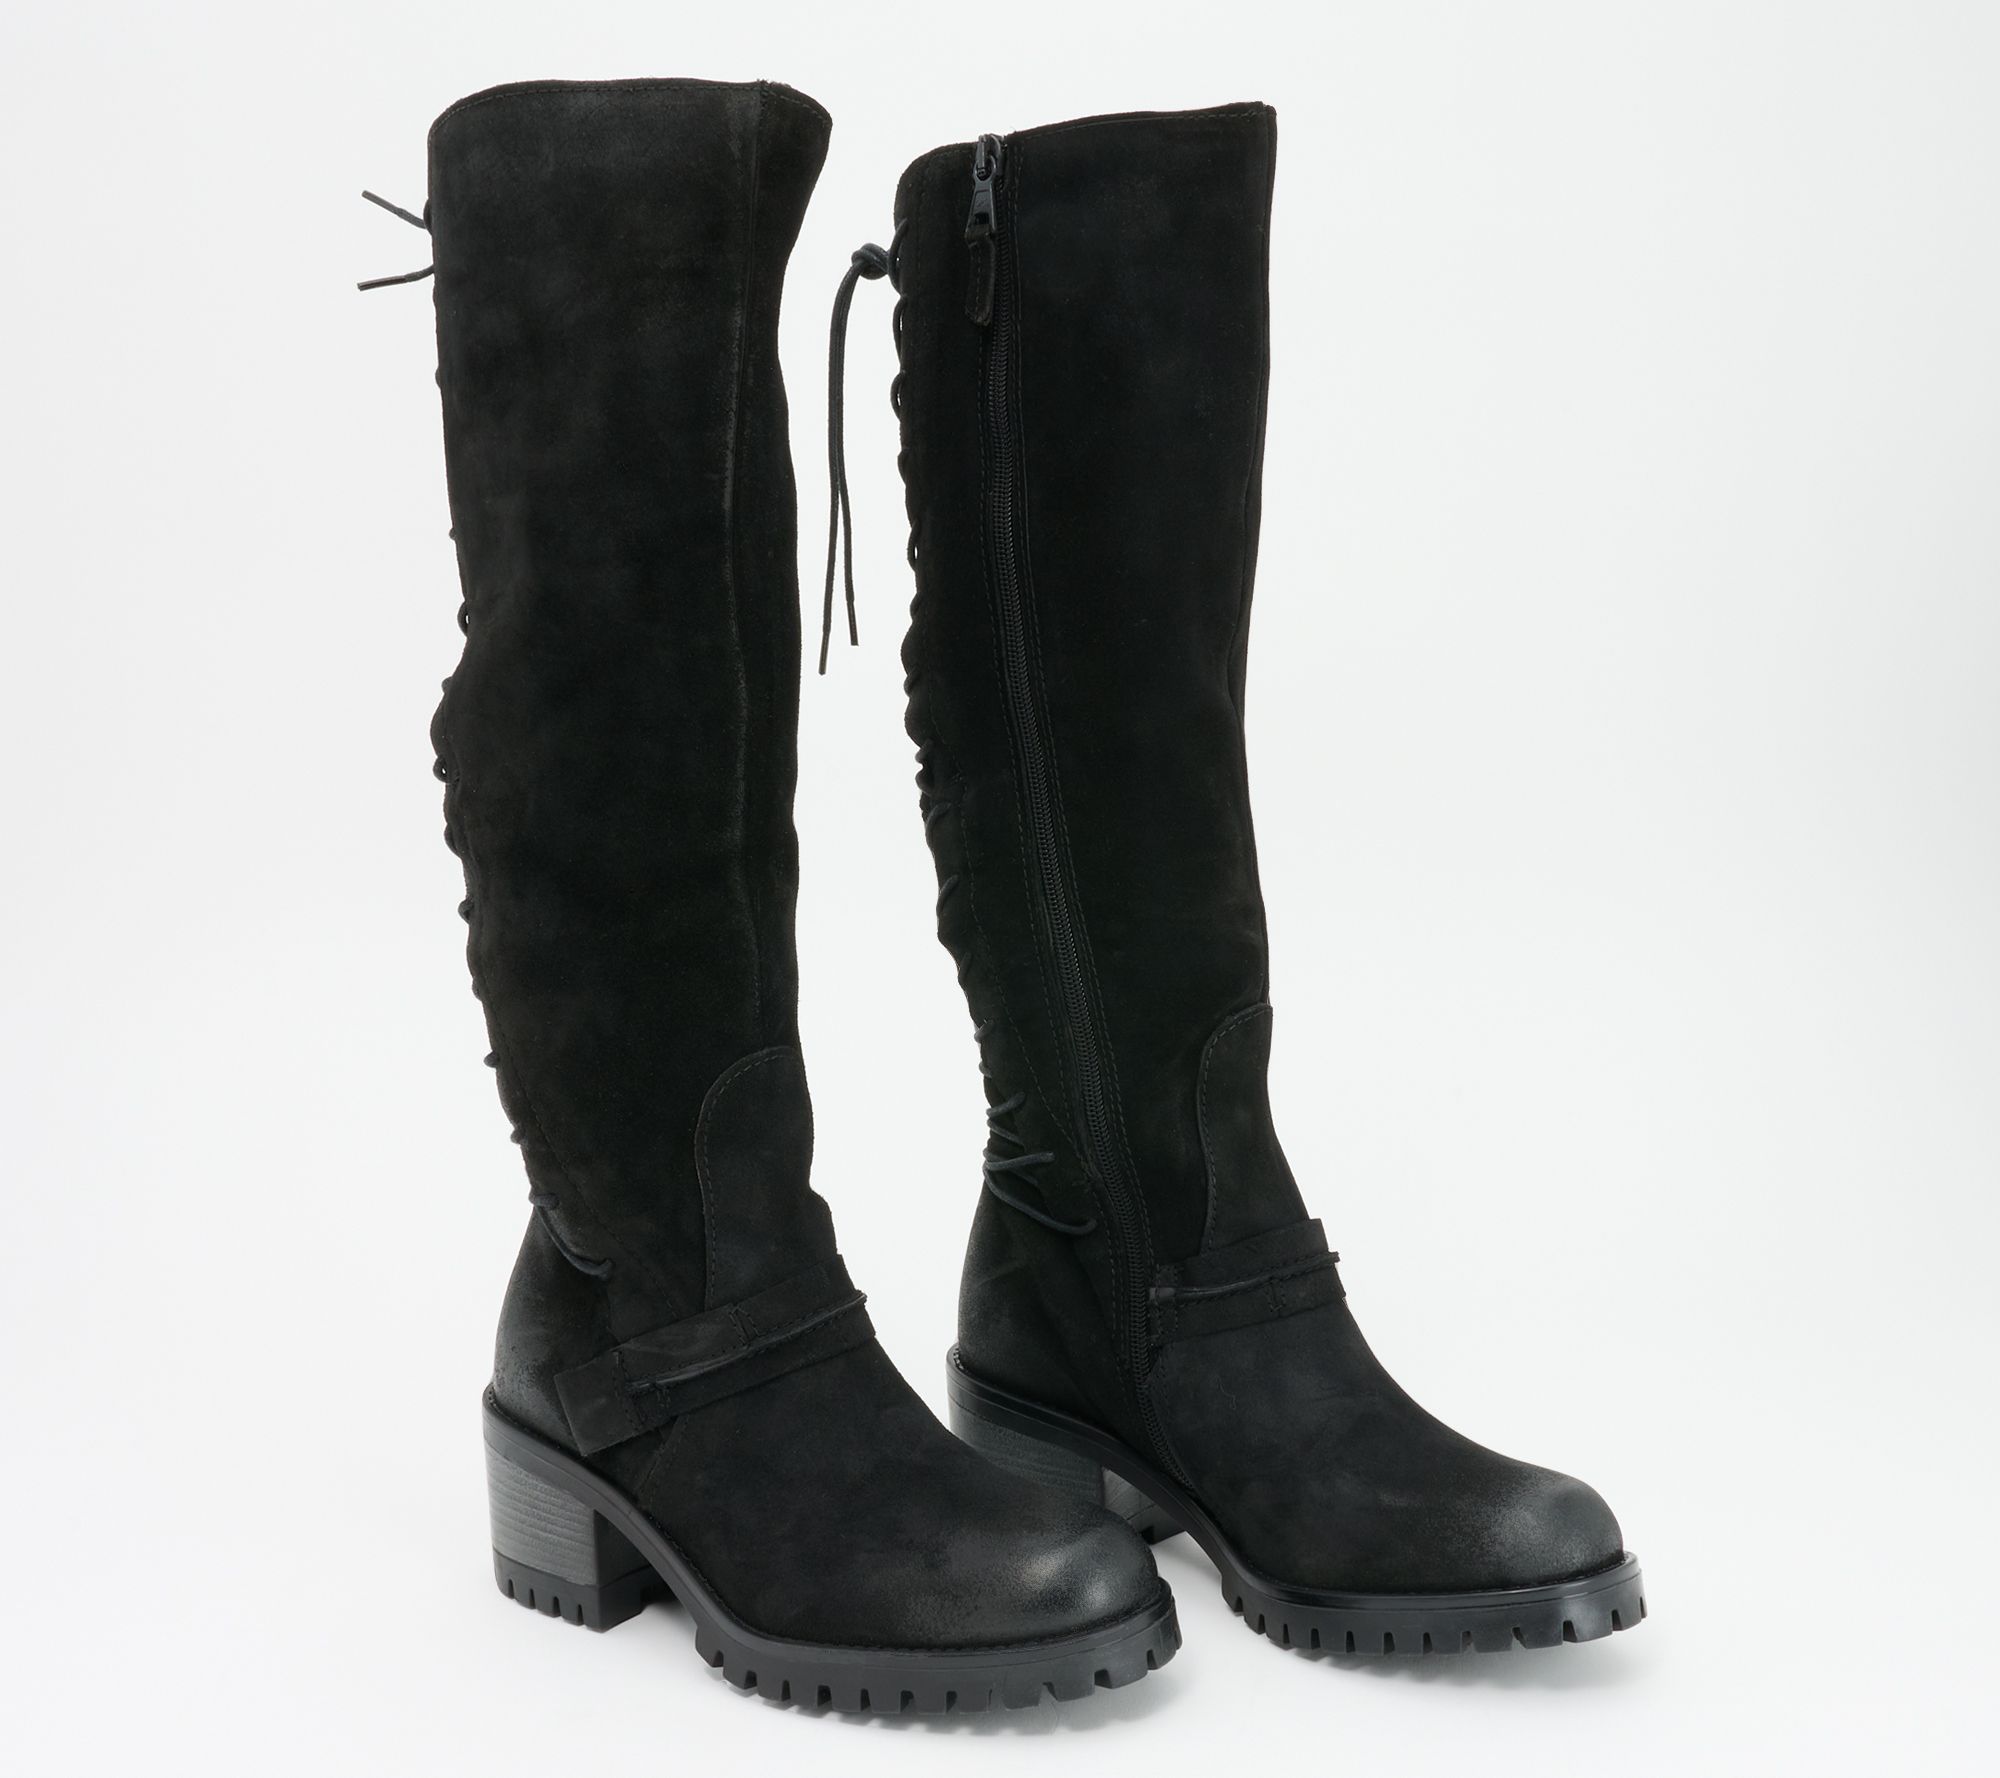 Miz Mooz Leather Tall Shaft Boots - Mavis